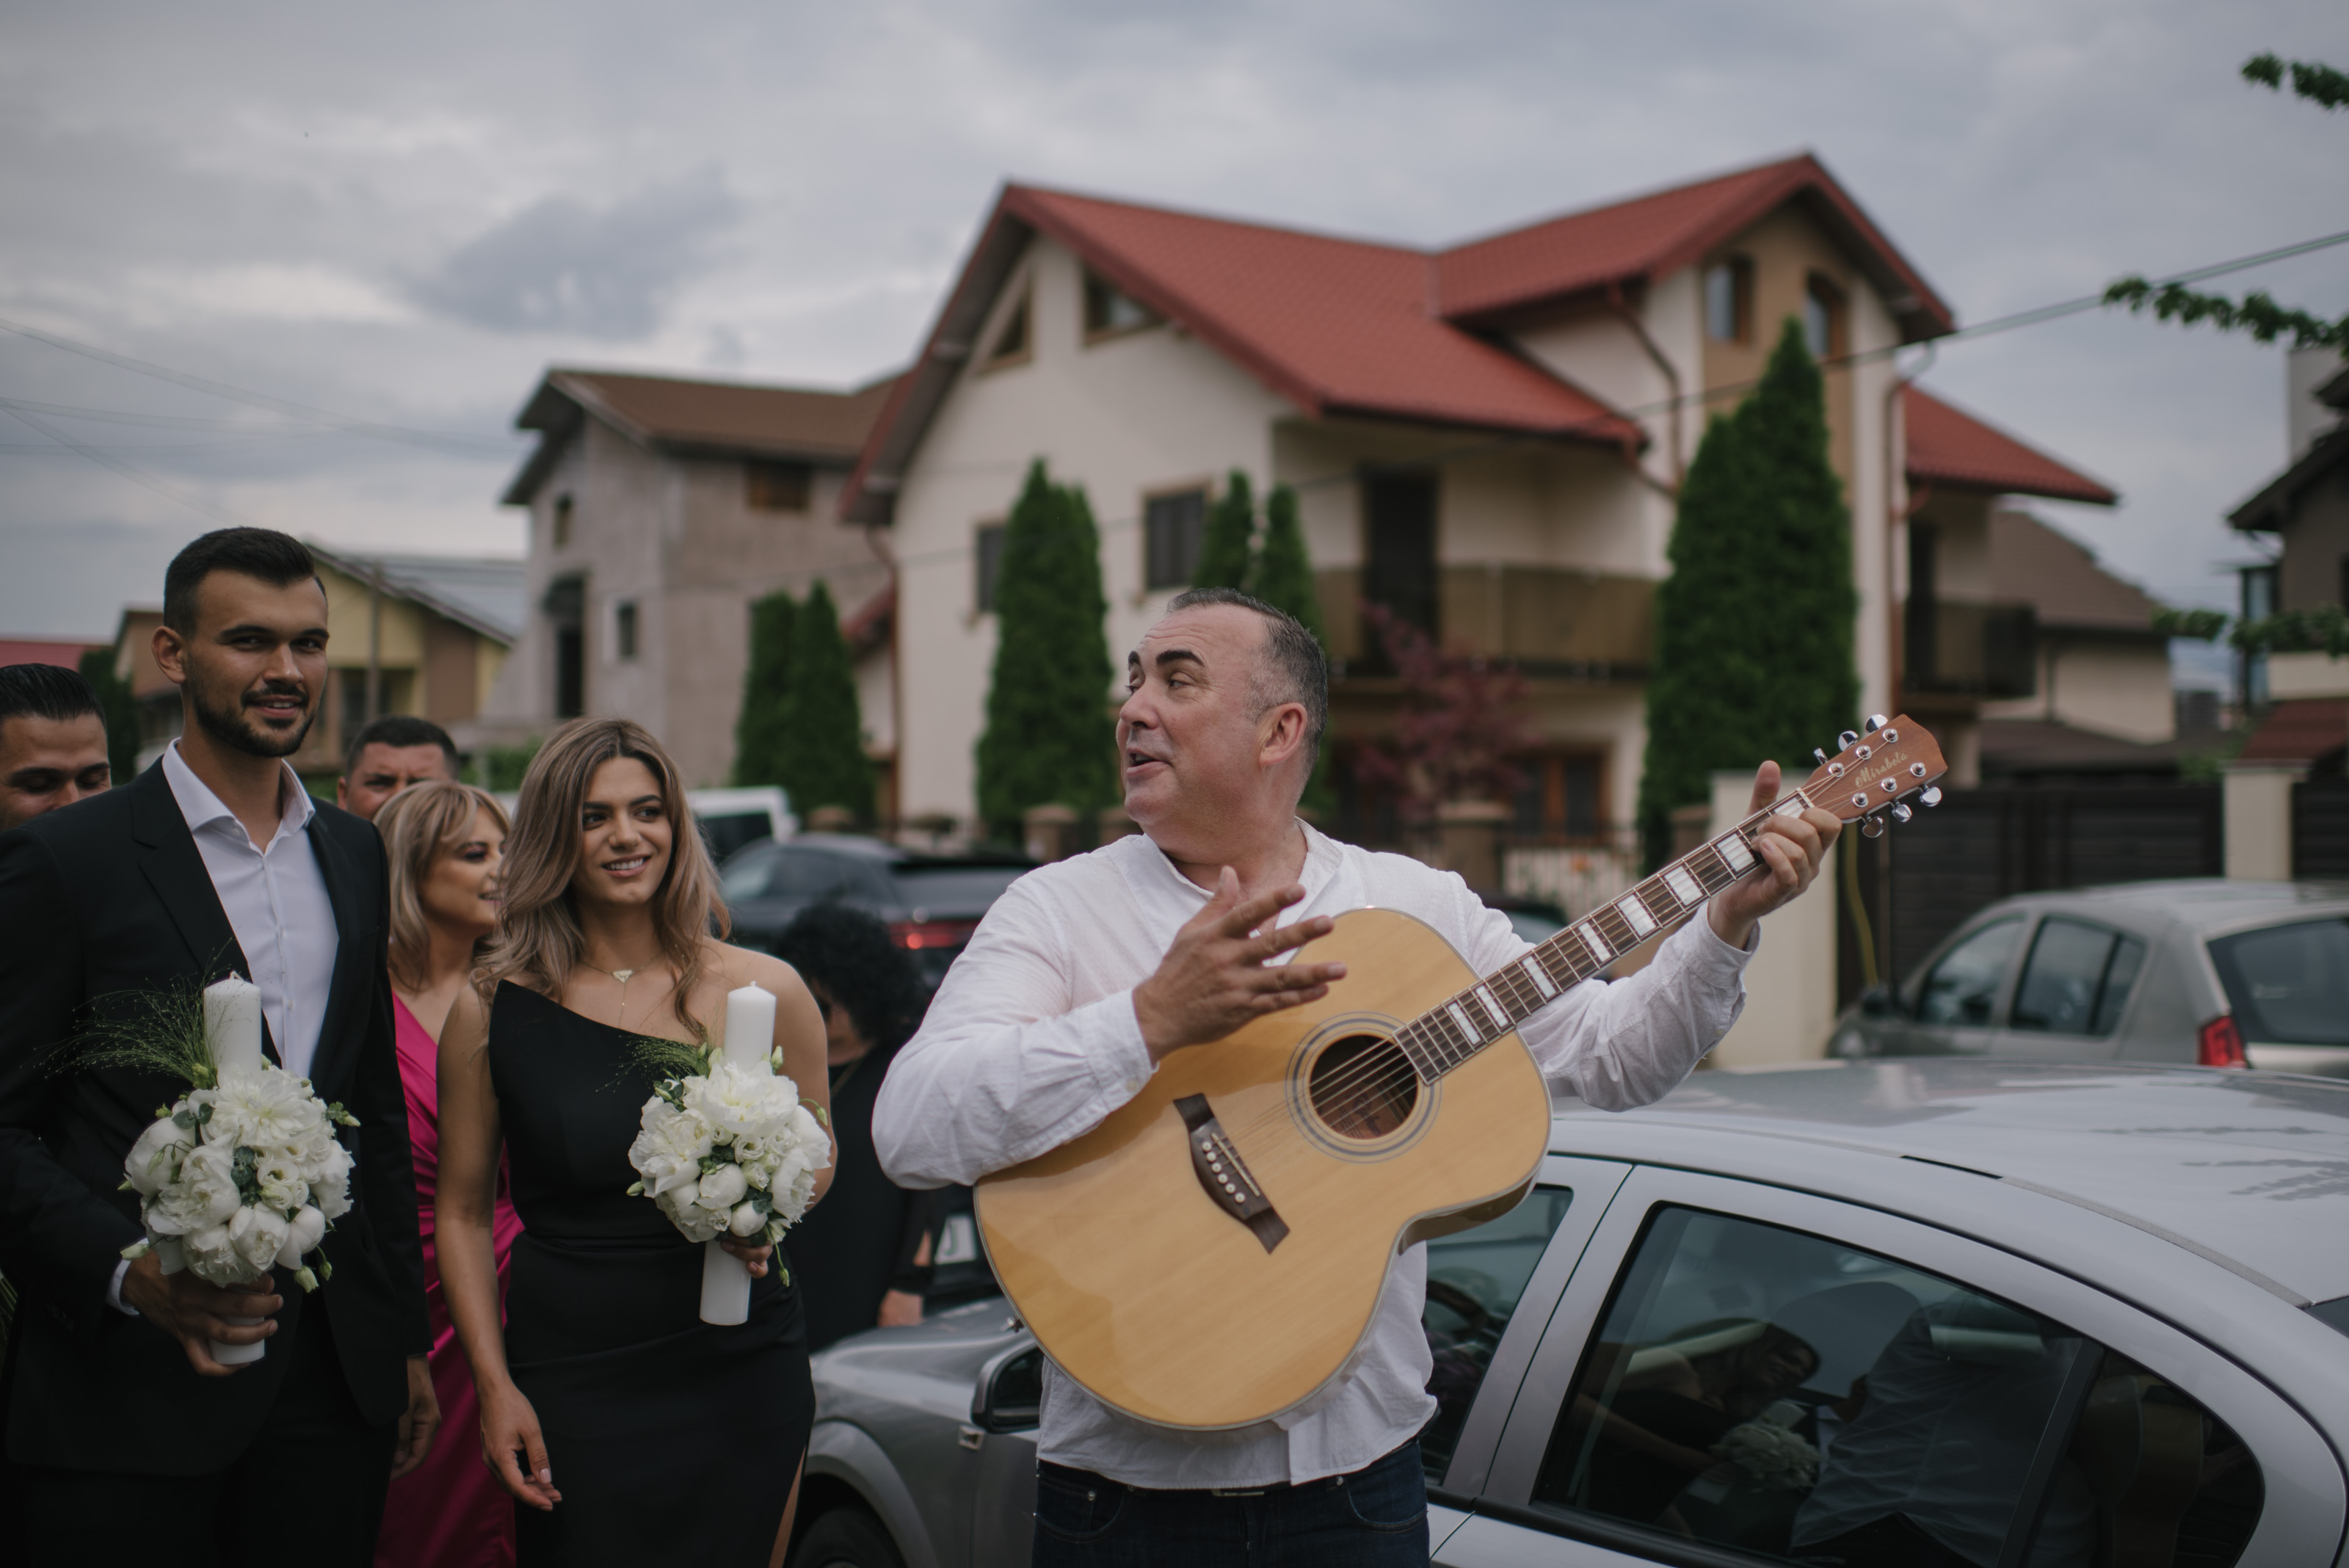 Guitar singer at wedding